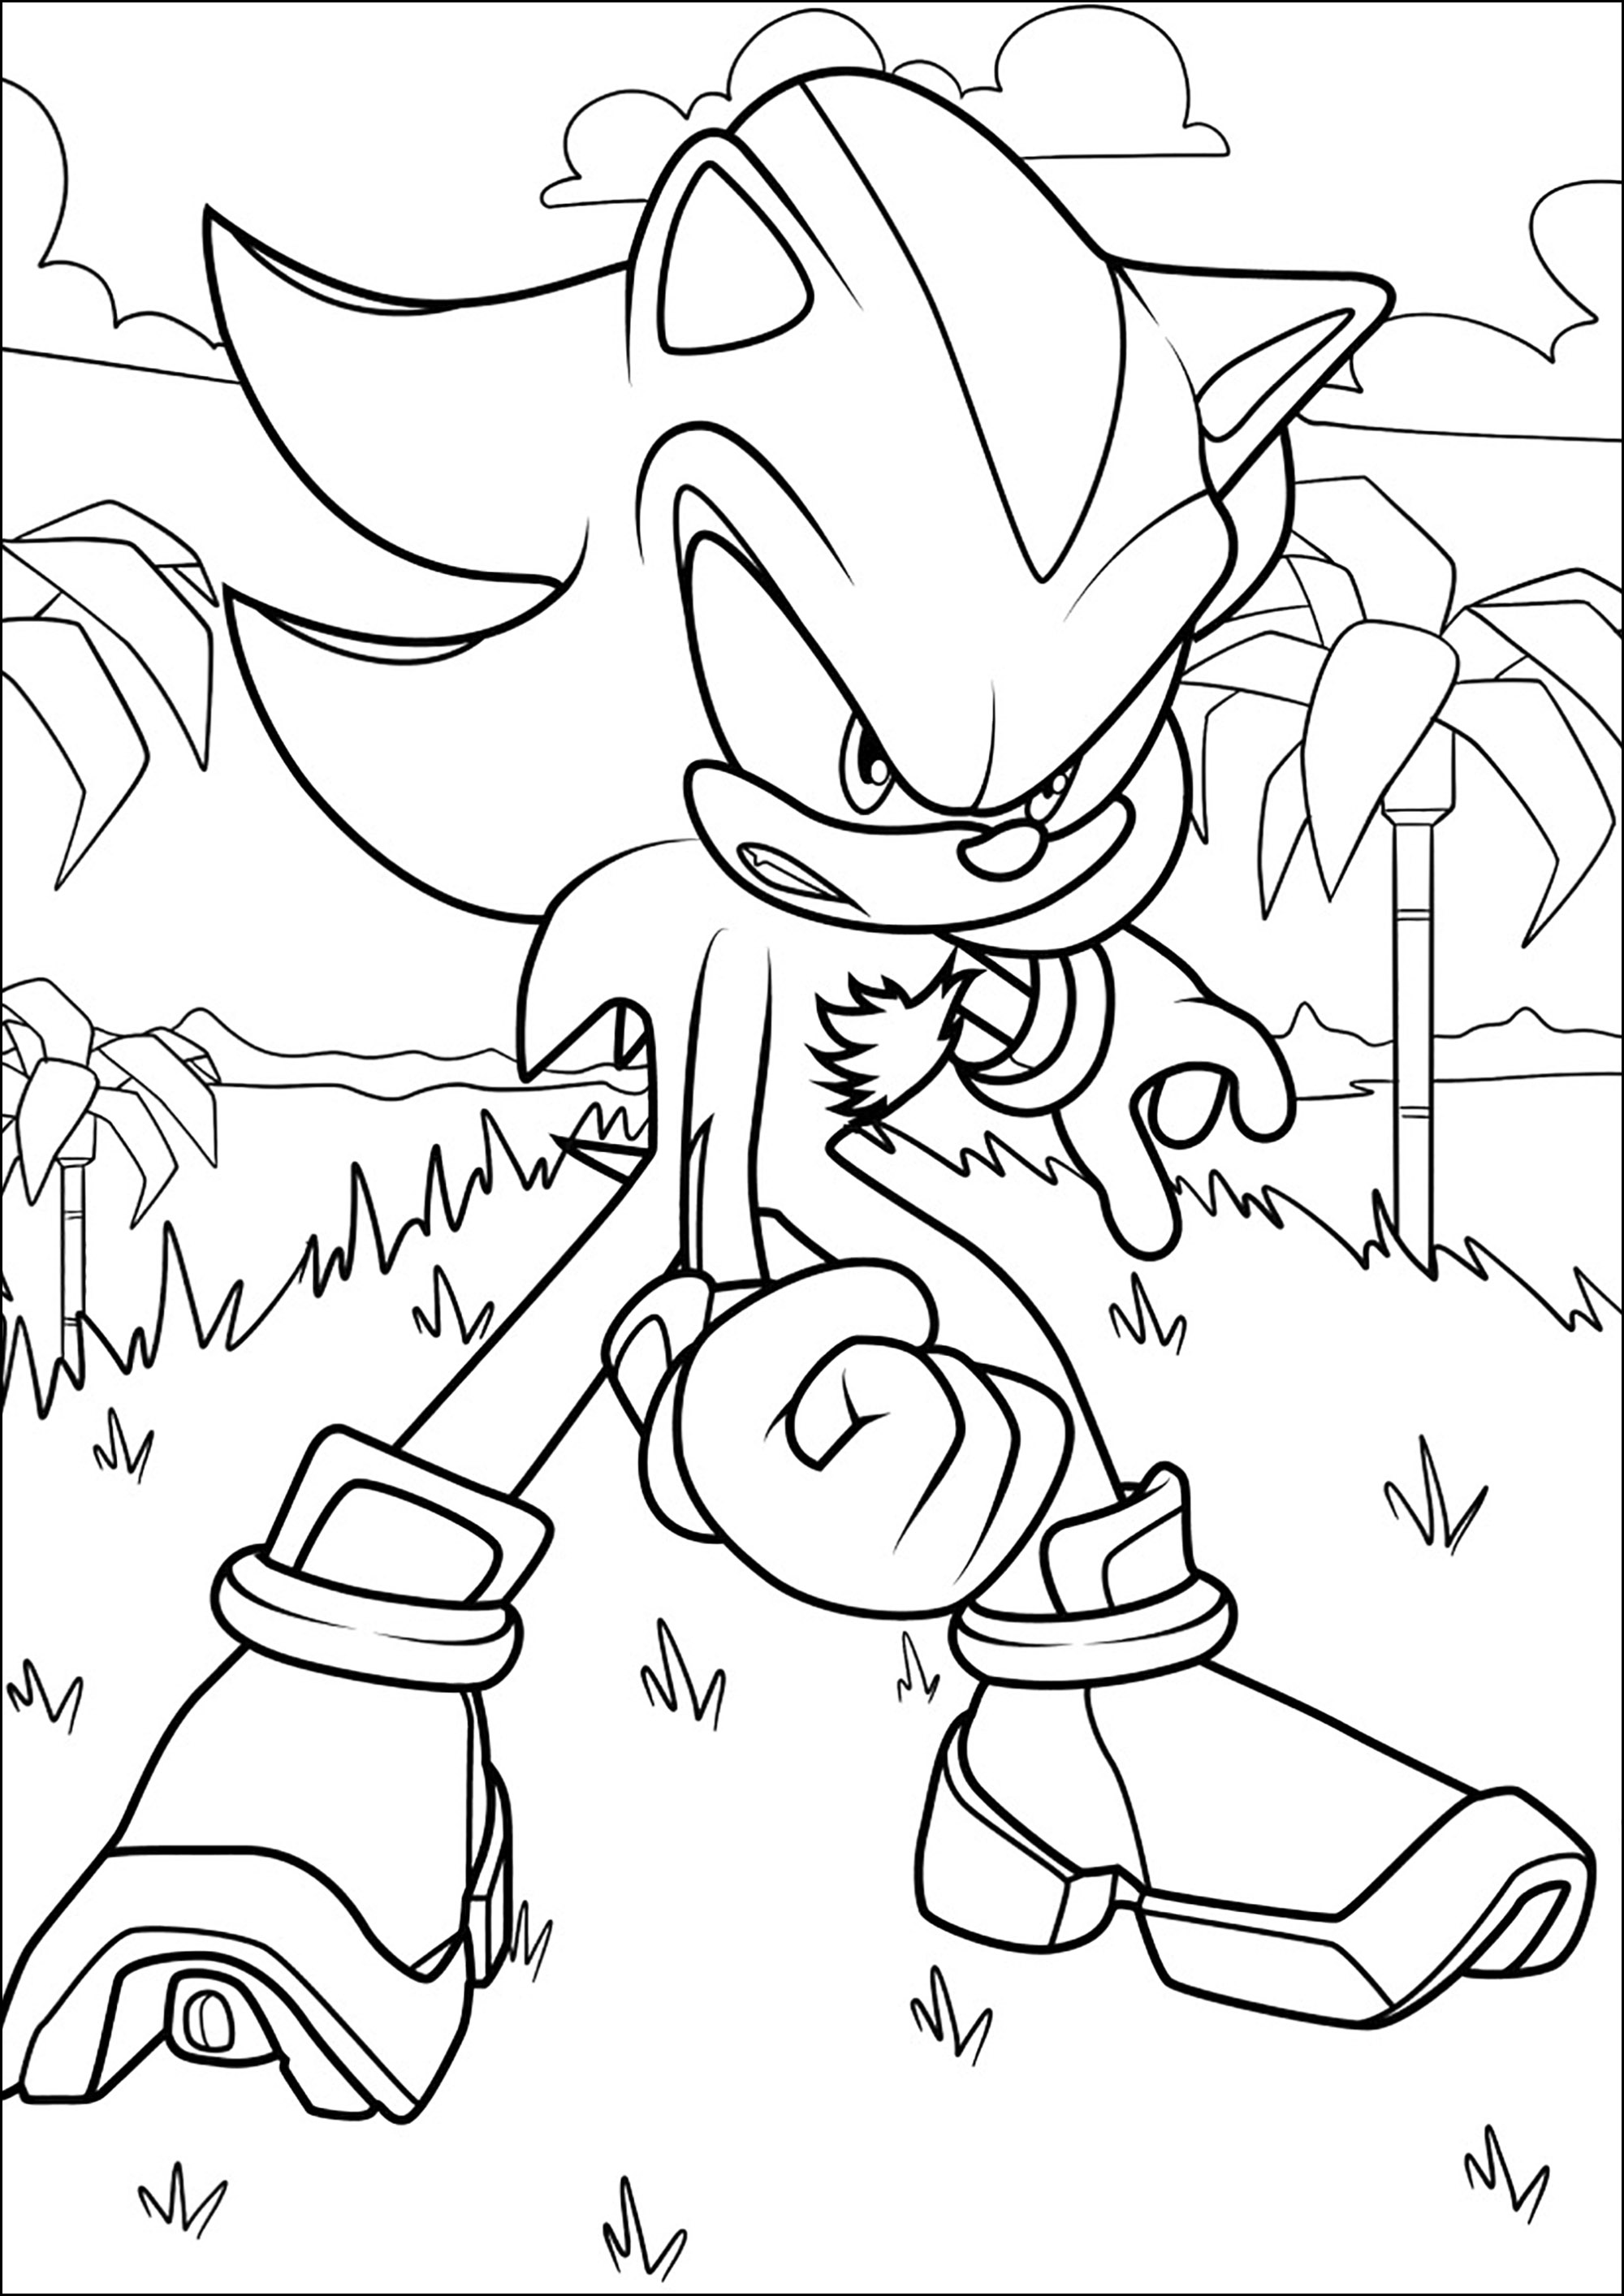 Desenho de Sonic, o Ouriço para colorir  Desenhos para colorir e imprimir  gratis